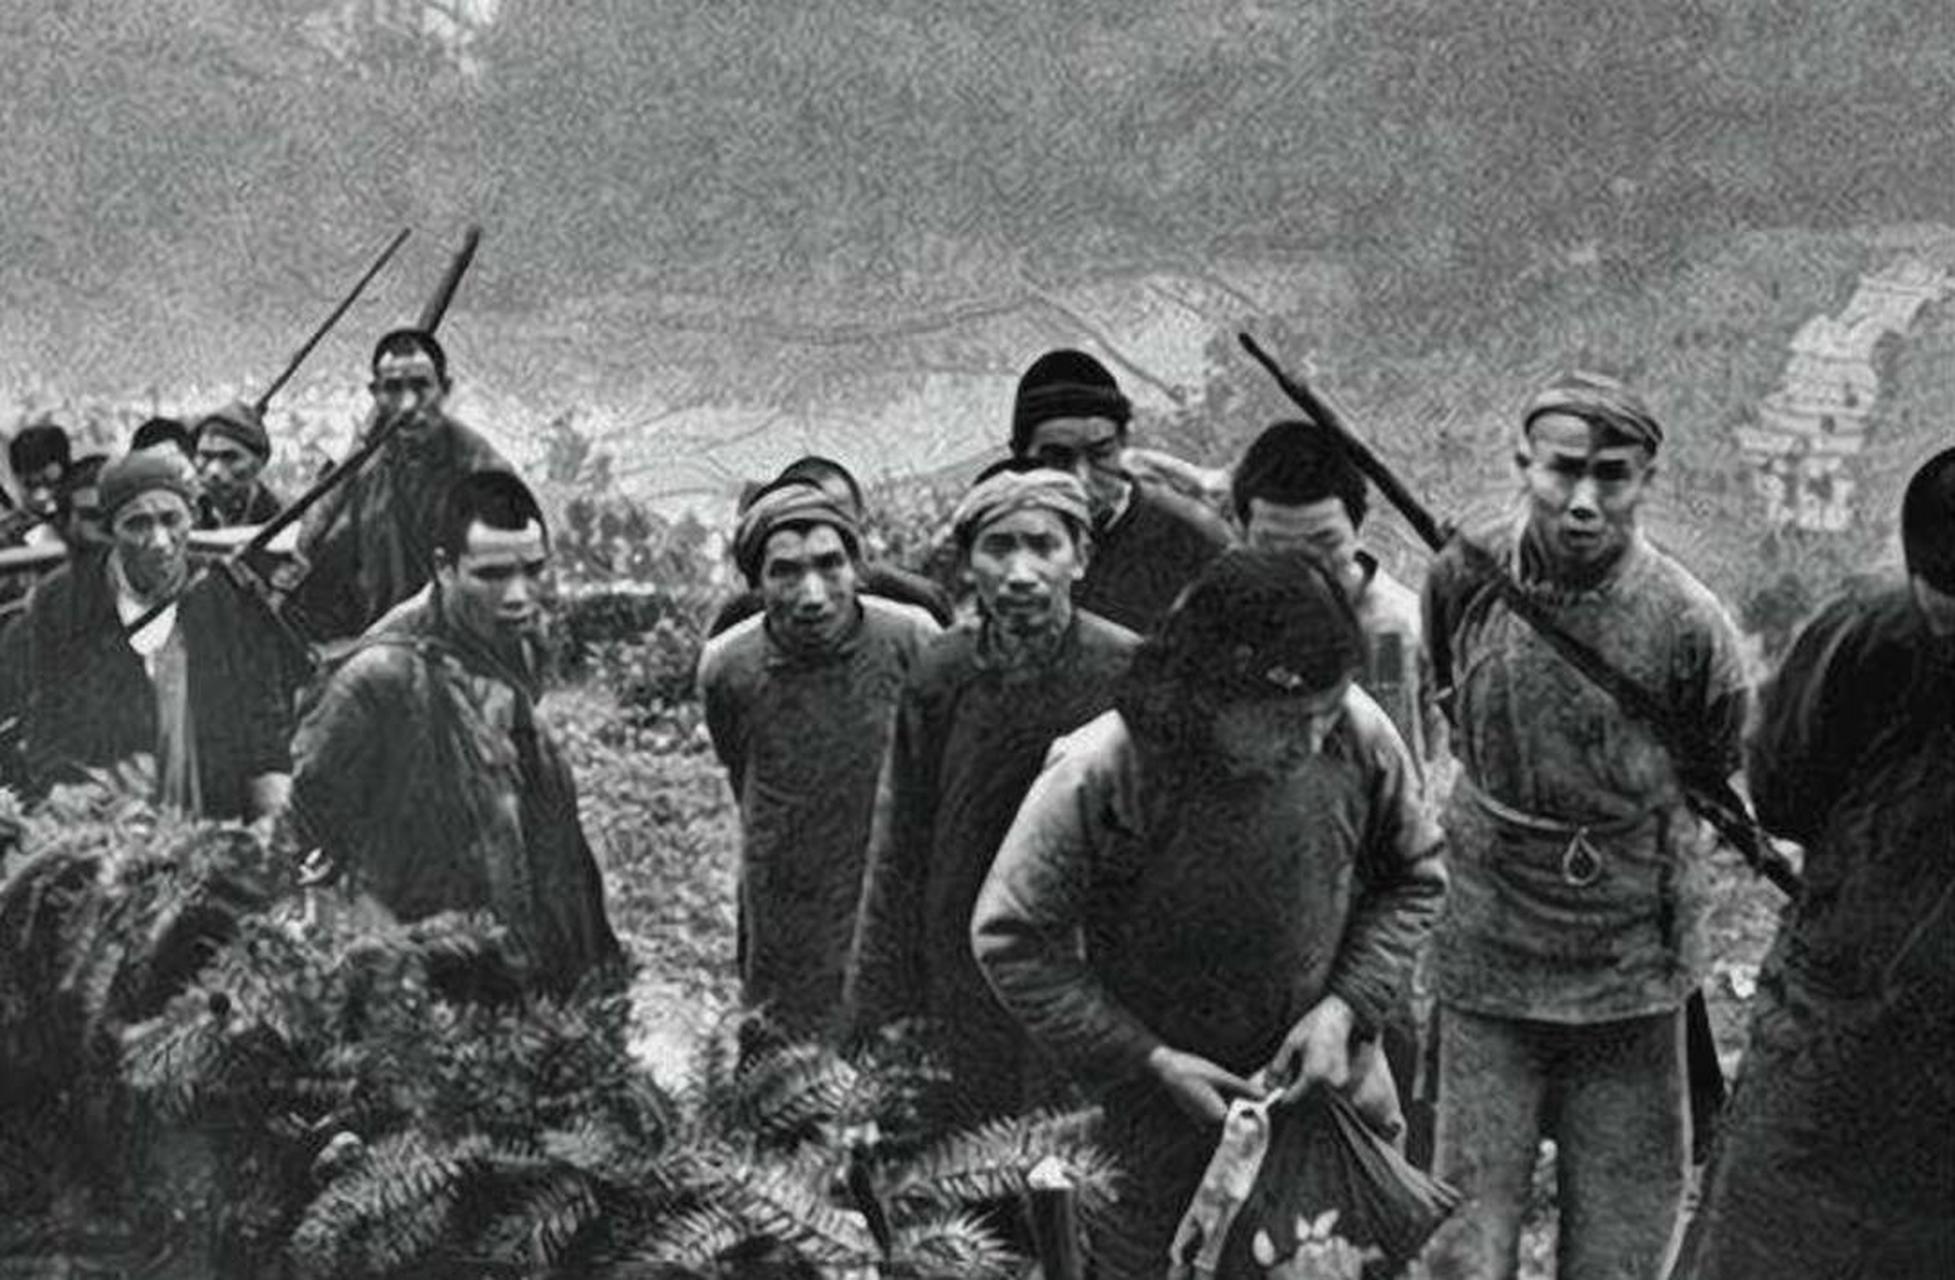 1950年四川剿匪真实照片记录,那个时候整个大西南深山老林中的土匪大